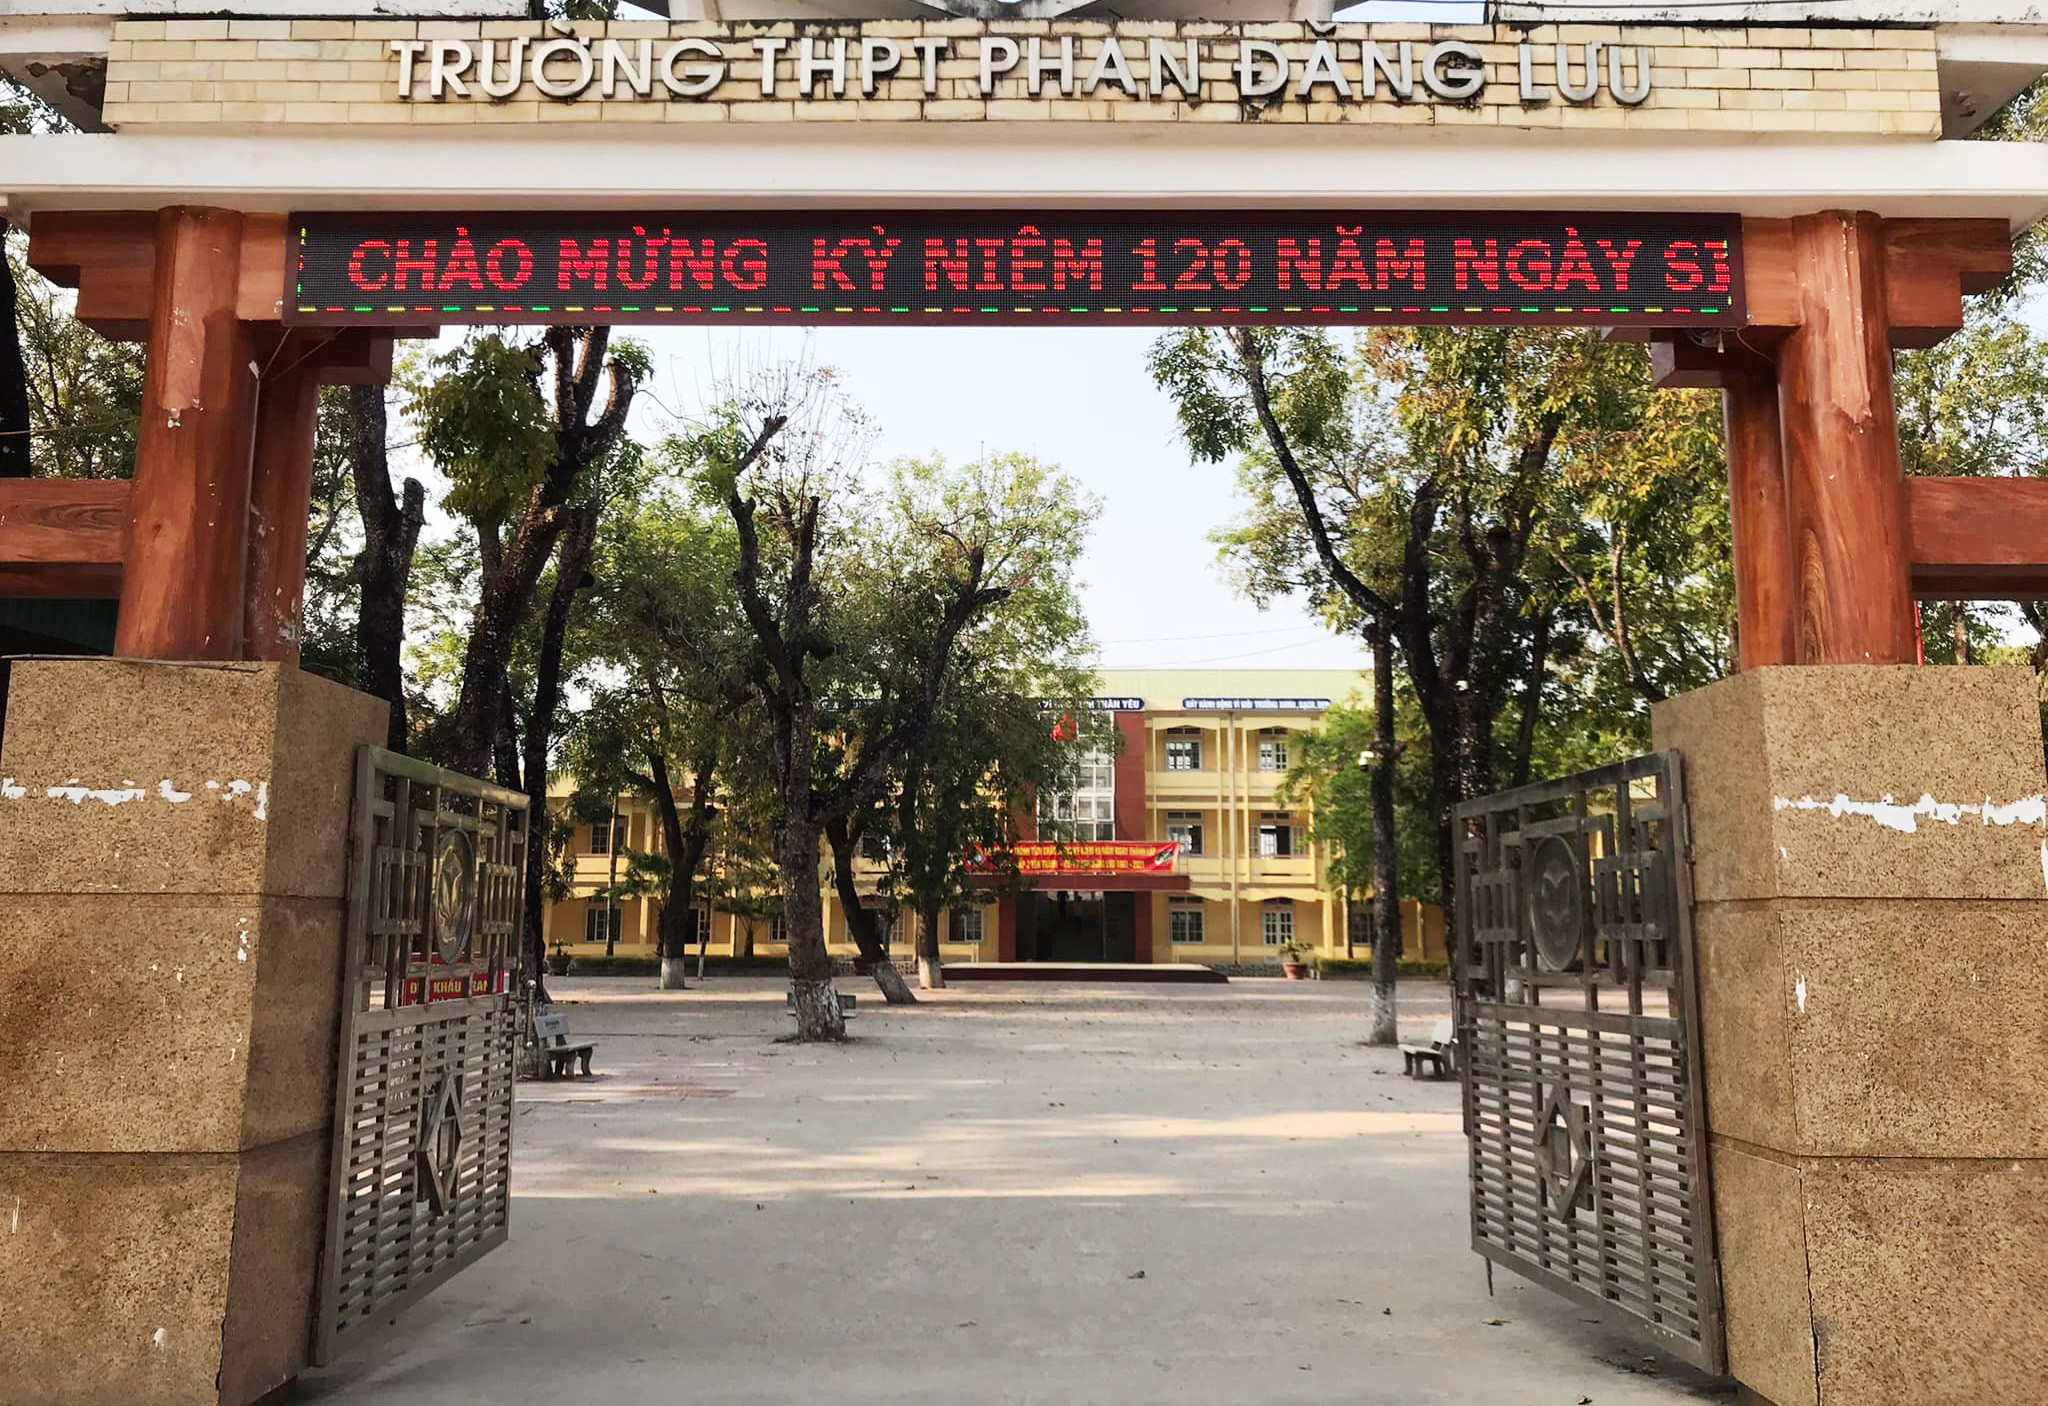 Trường THPT Phan Đăng Lưu. Ảnh: fb nhà trường